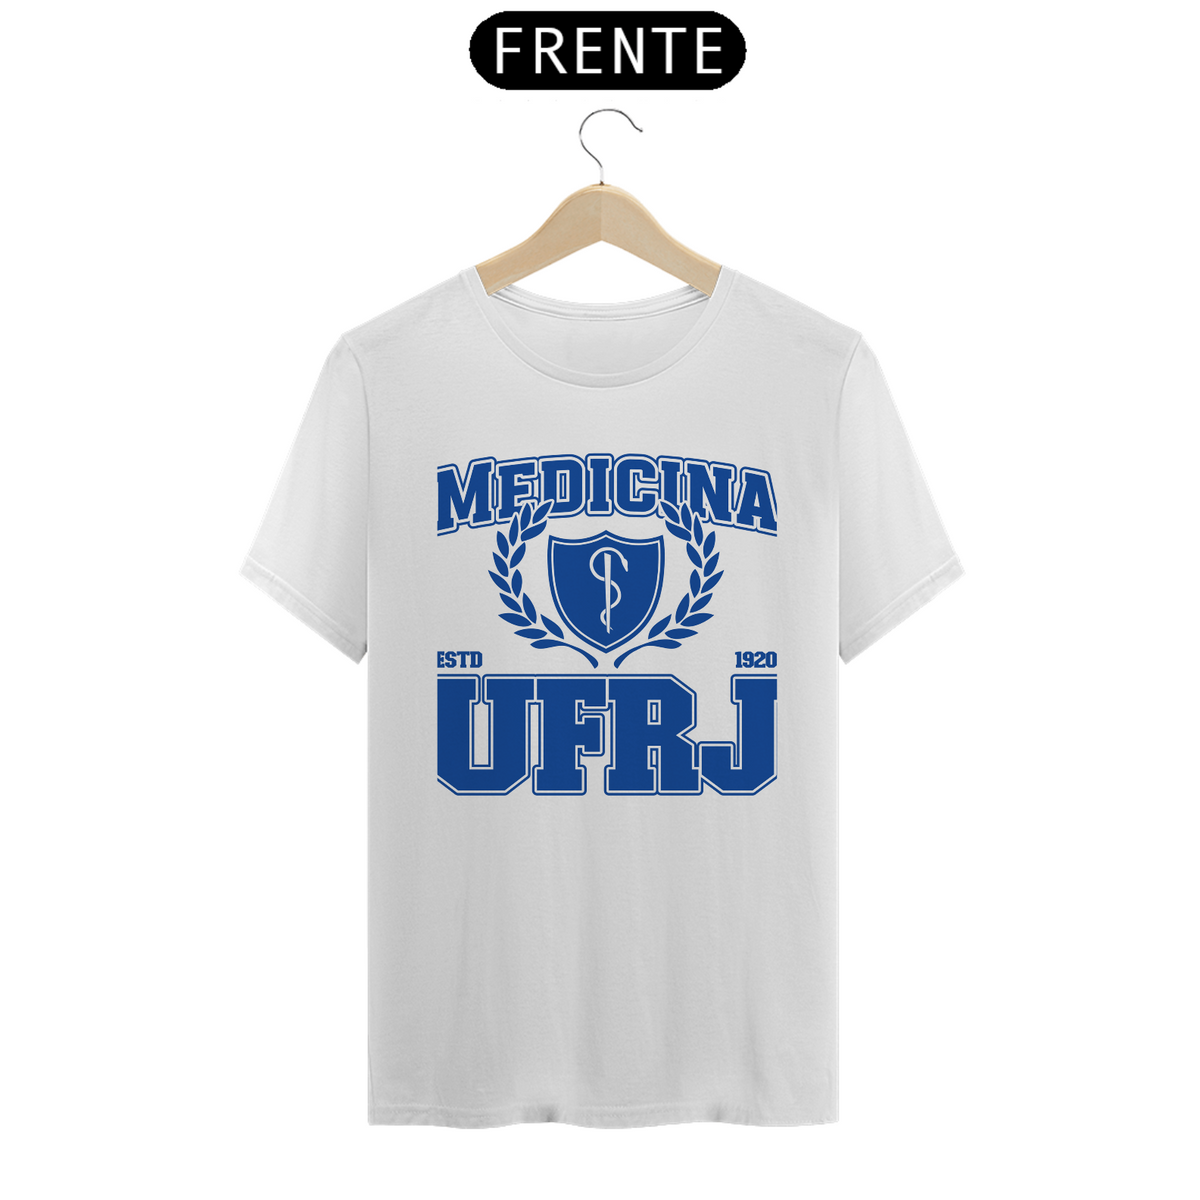 Nome do produto: UniVerso- Medicina UFRJ